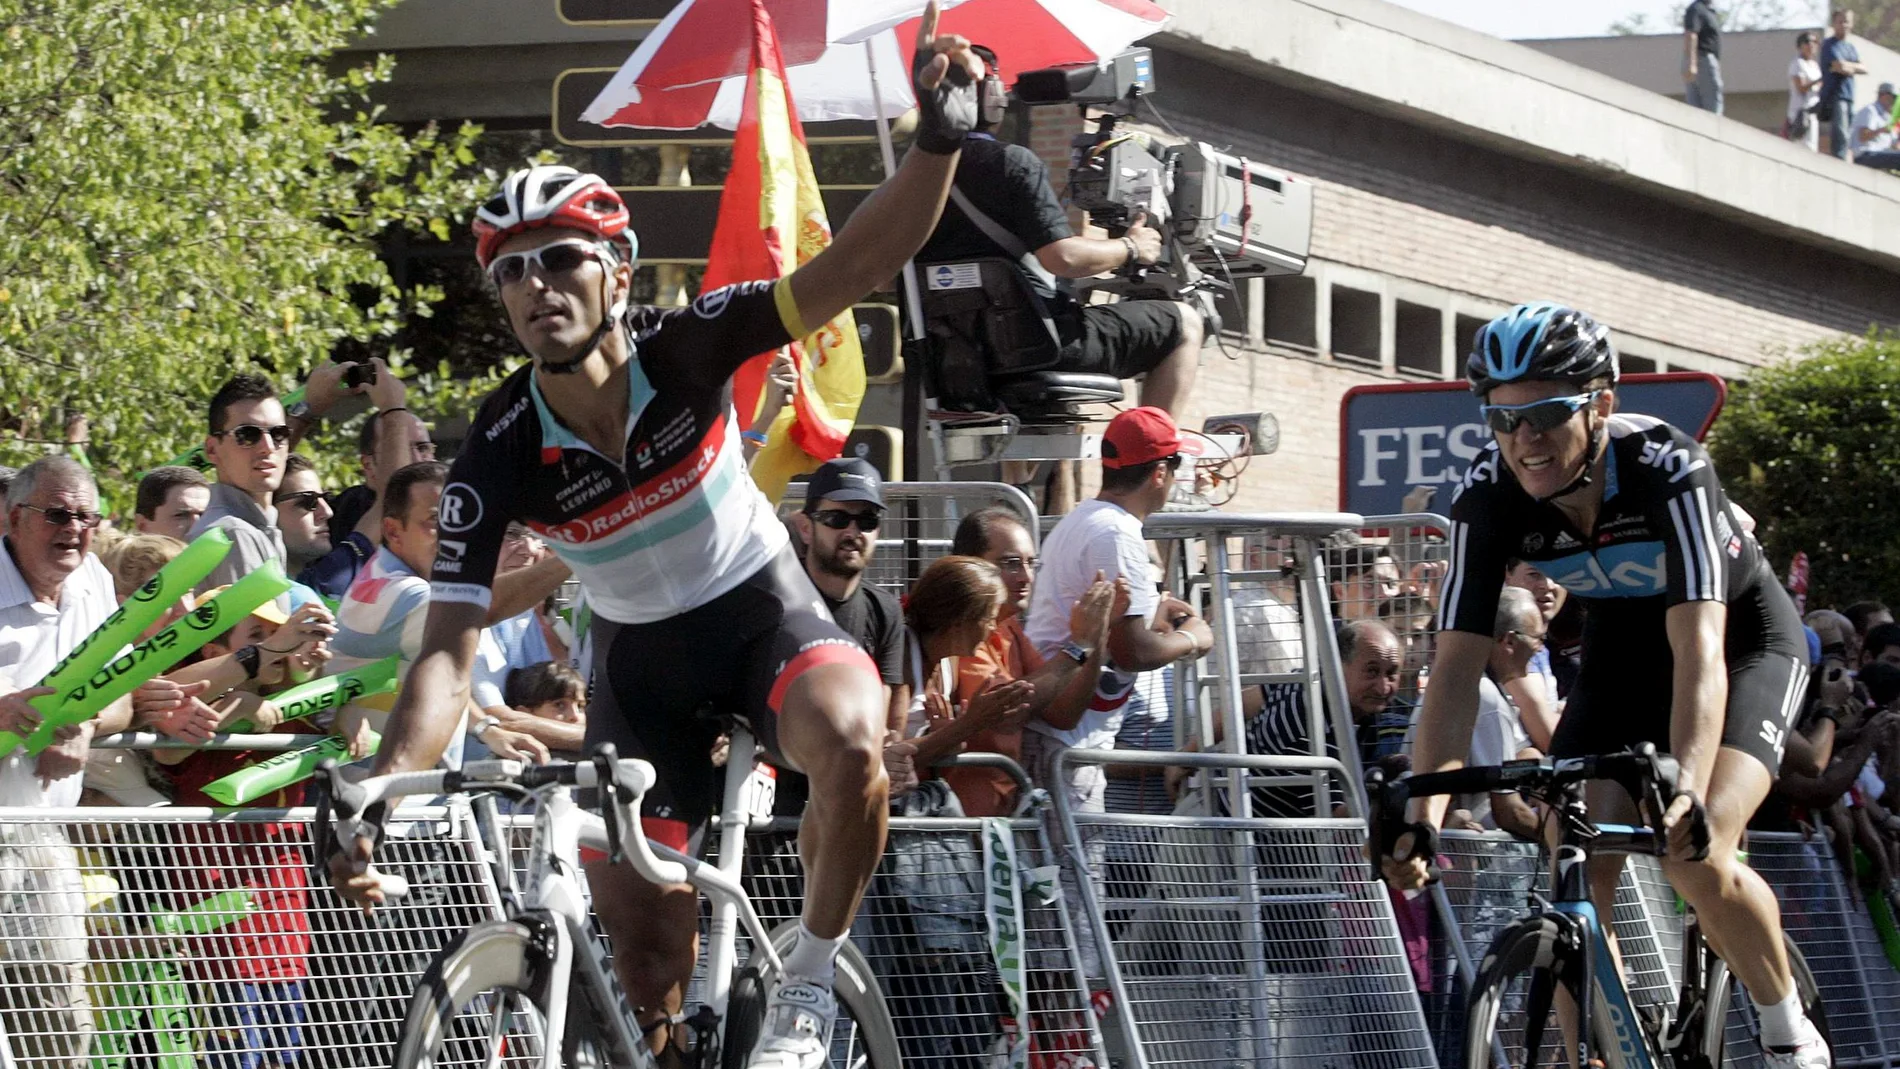 Daniele Bennati vence en Valladolid al sprint en 2012, la última vez que la Cuelta Ciclista a España llegó a la capital vallisoletana